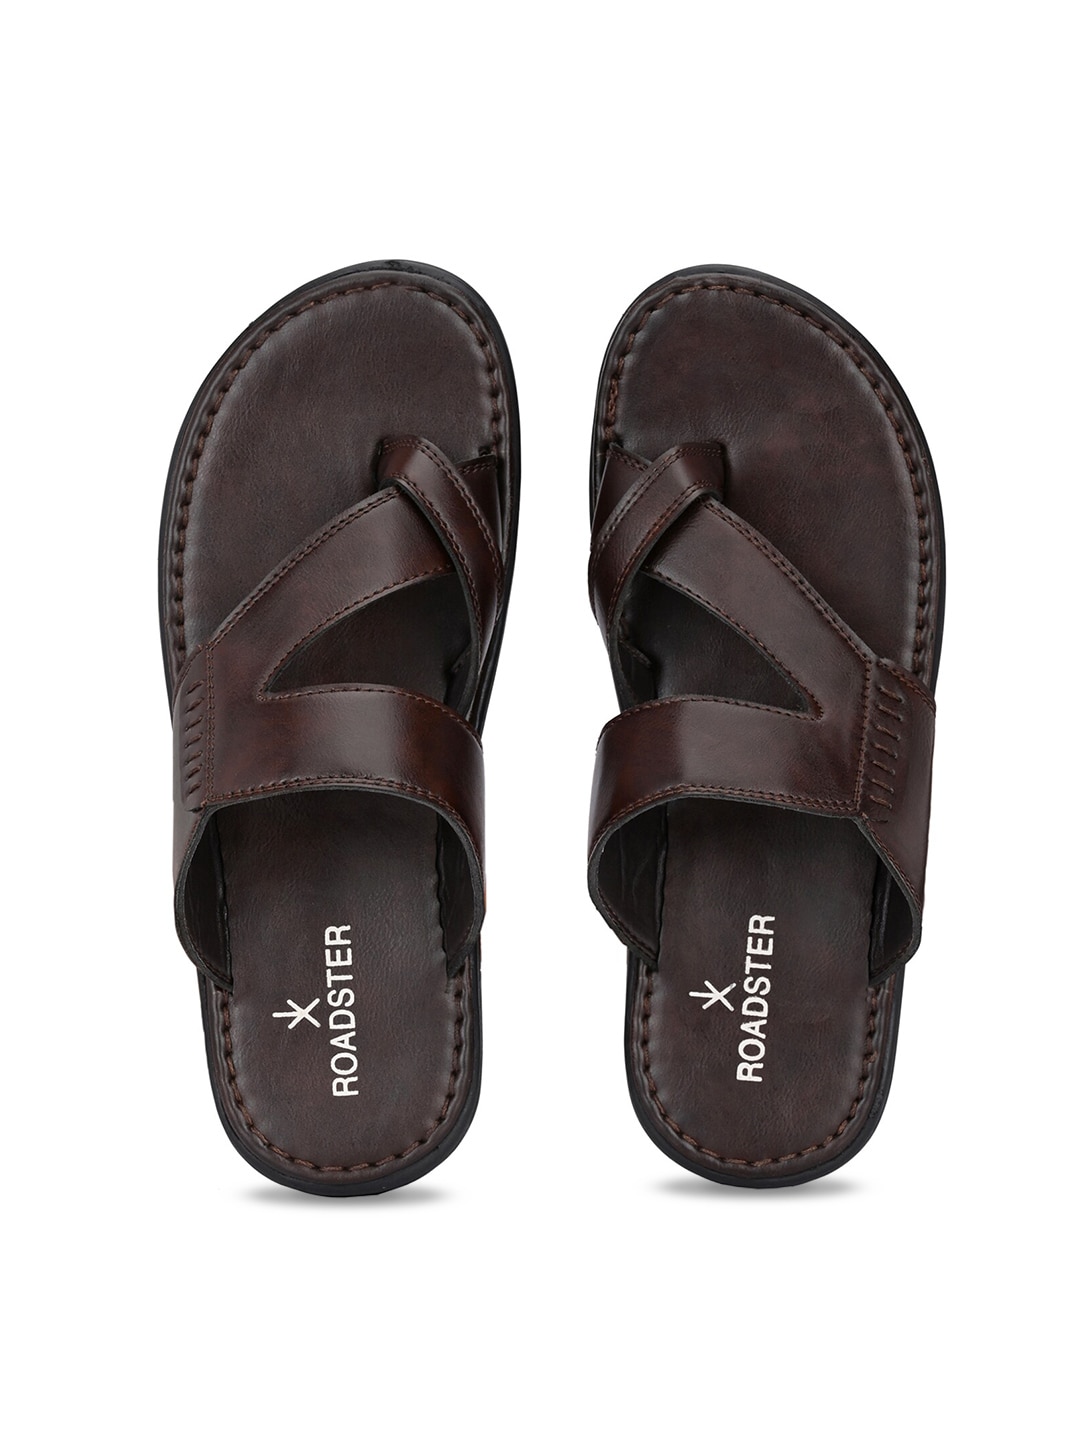 Roadster Men Grey Sports Sandals  Buy Roadster Men Grey Sports Sandals  Online at Best Price  Shop Online for Footwears in India  Flipkartcom